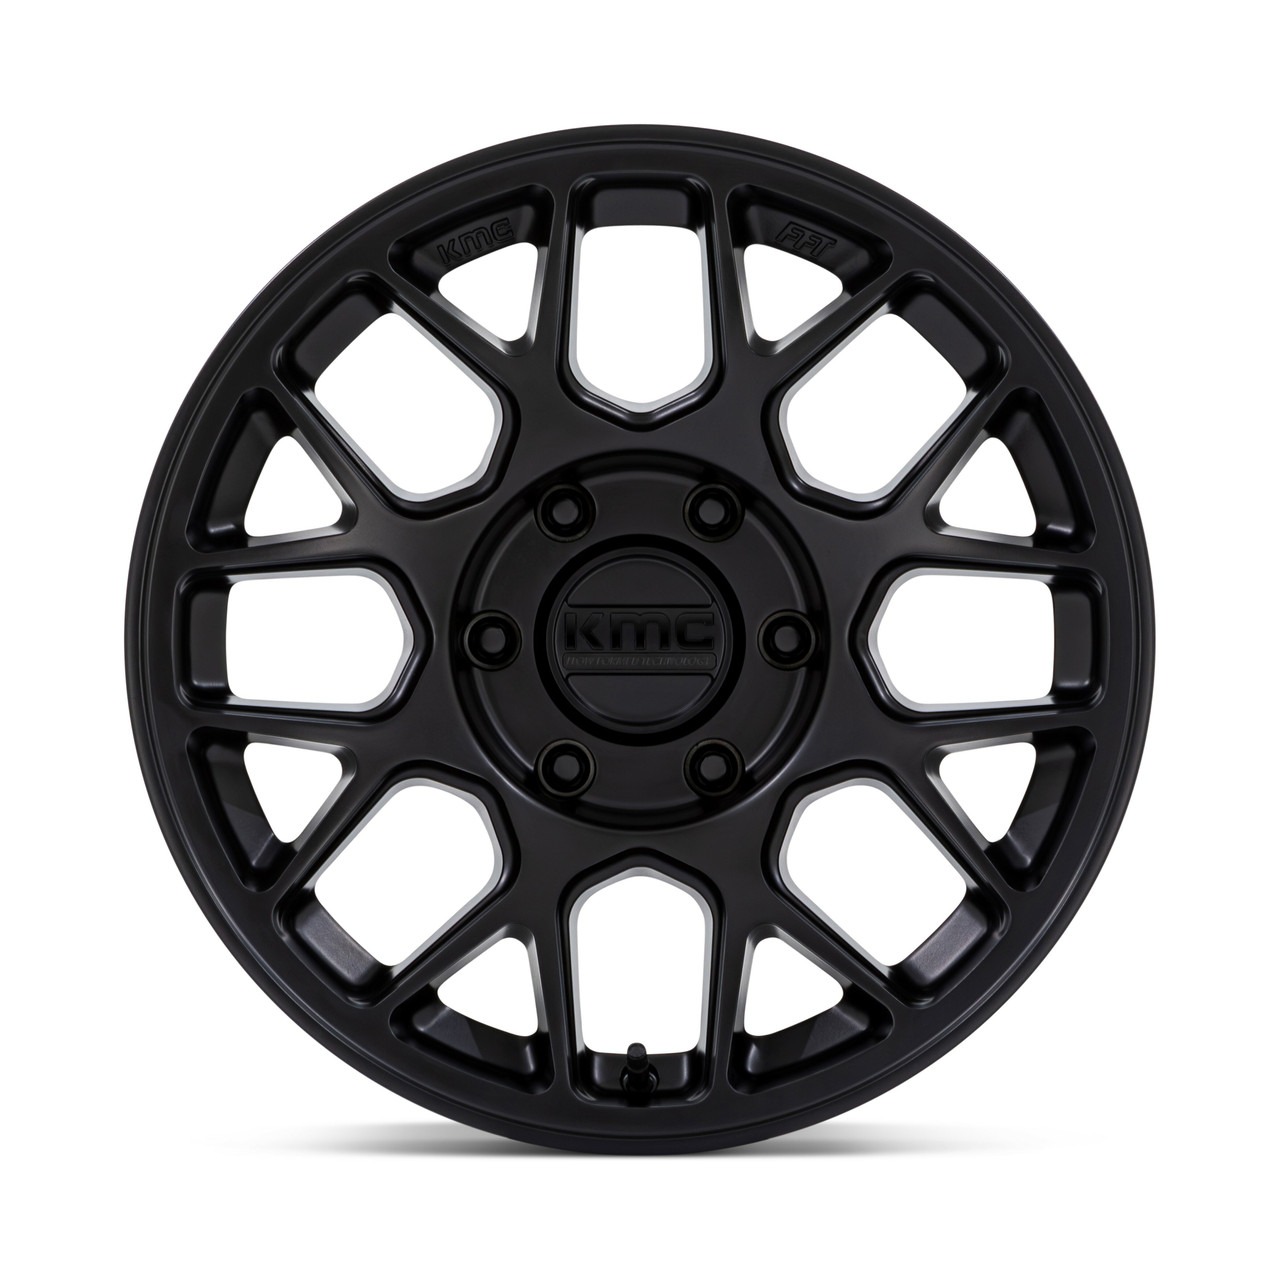 17" KMC KM730 Hatchet Matte Black 17x8.5 Wheel 6x135 25mm For Ford Lincoln Rim